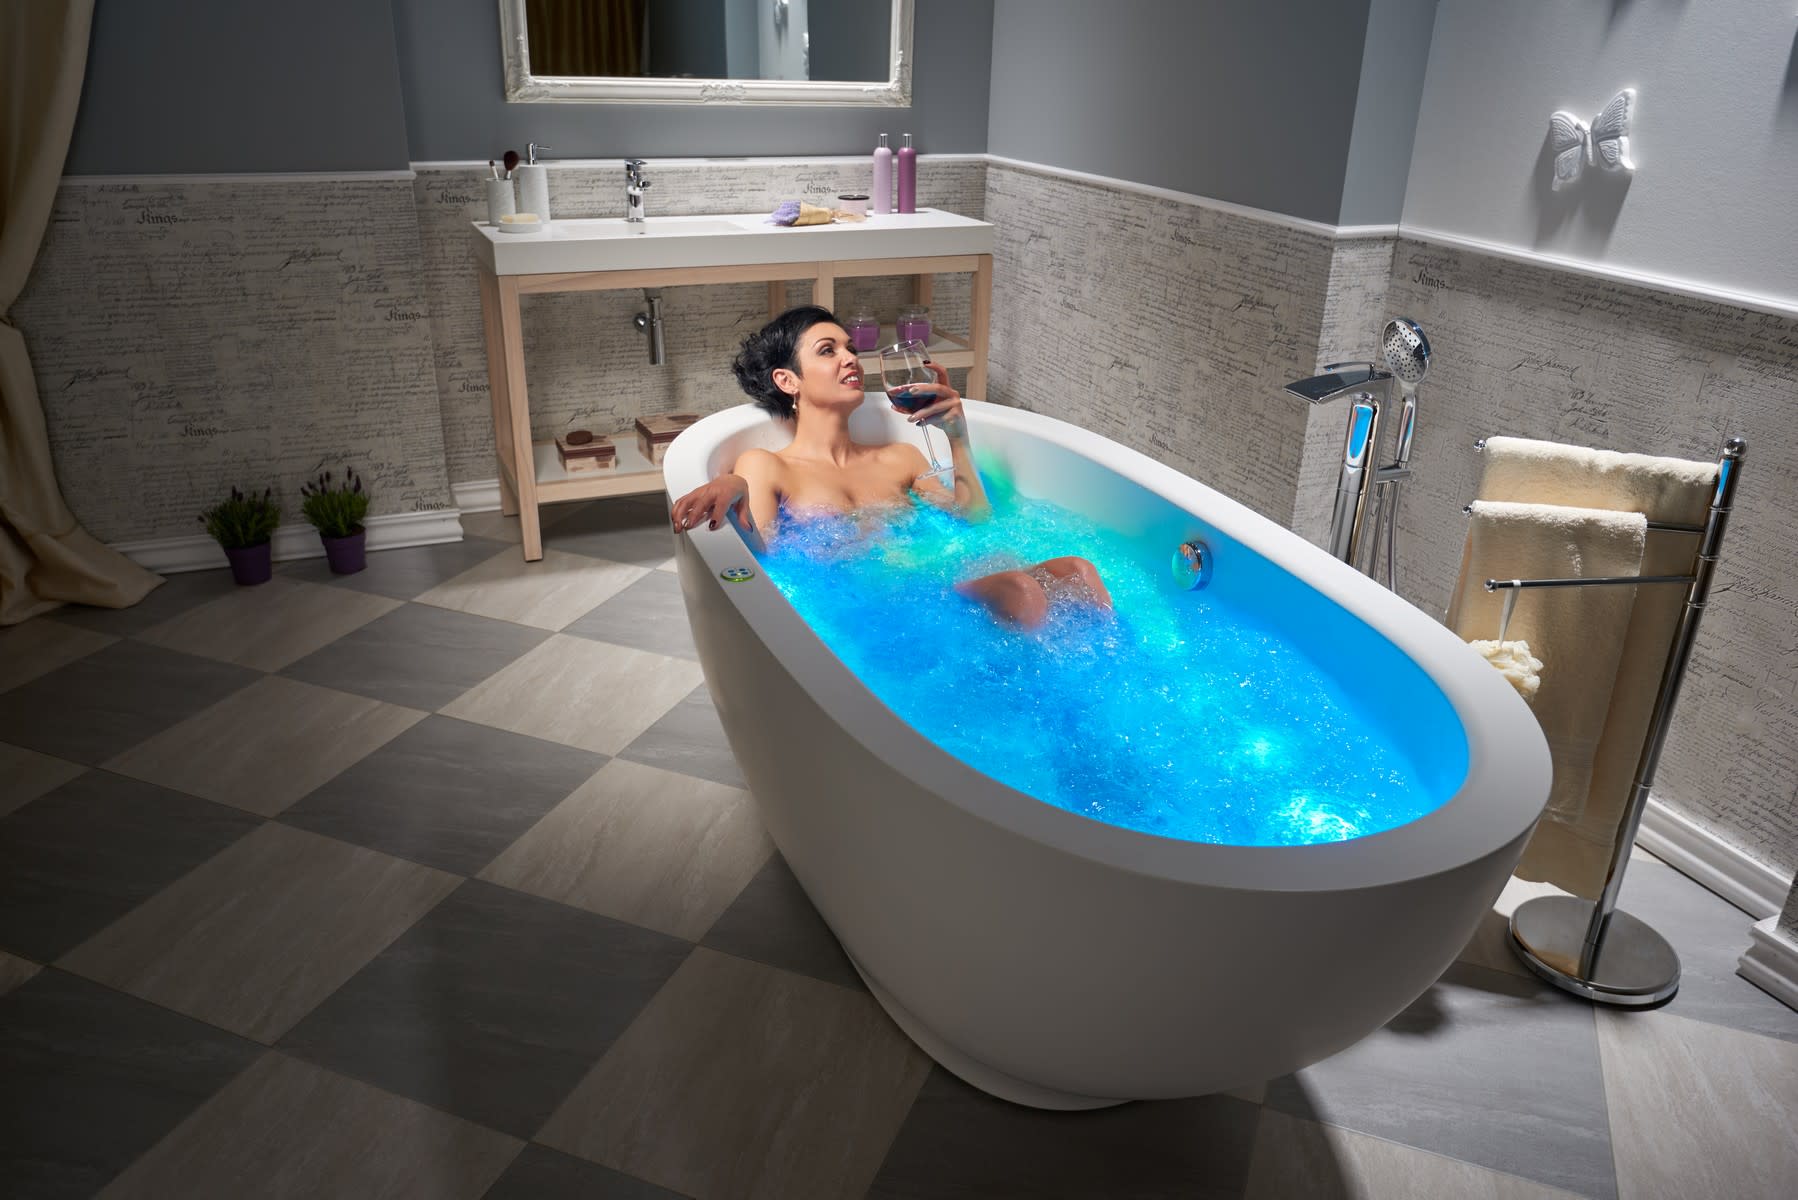 Aquatica Purescape Relax Air Massage Bathtub Features